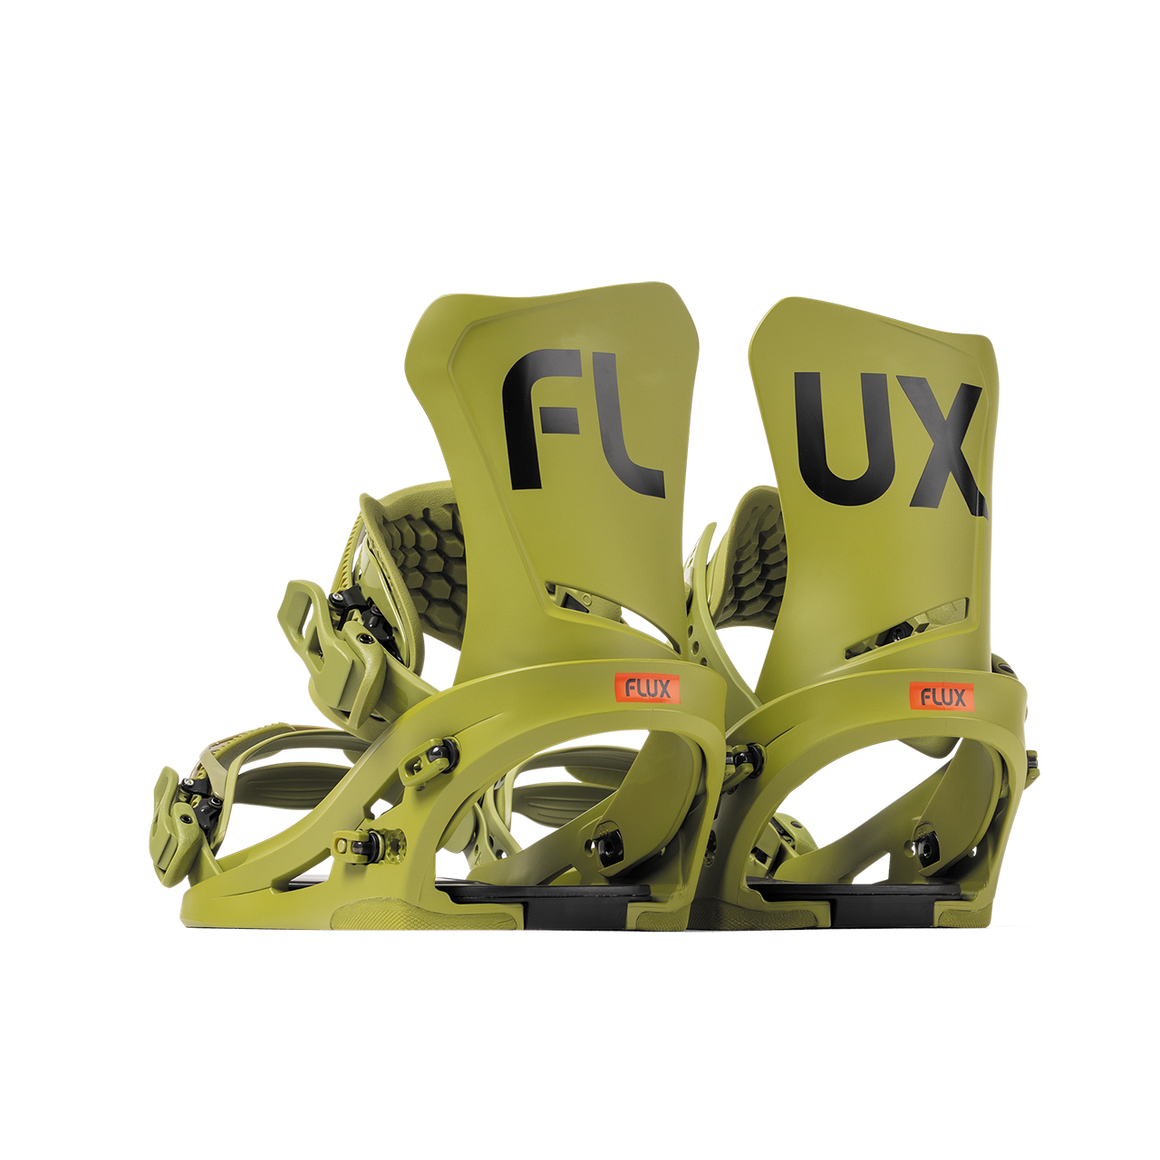 FLUX DSL ビンディング Mサイズ - スノーボード